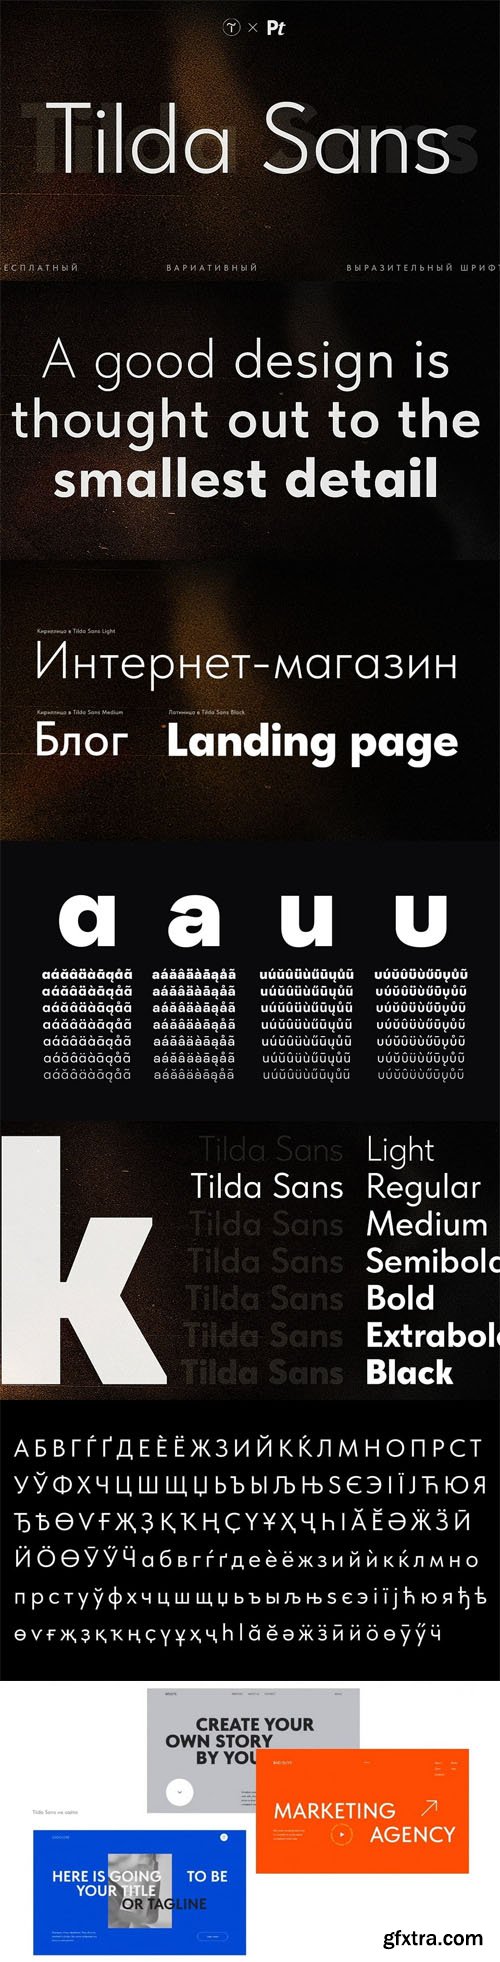 Tilda Sans Serif Typeface